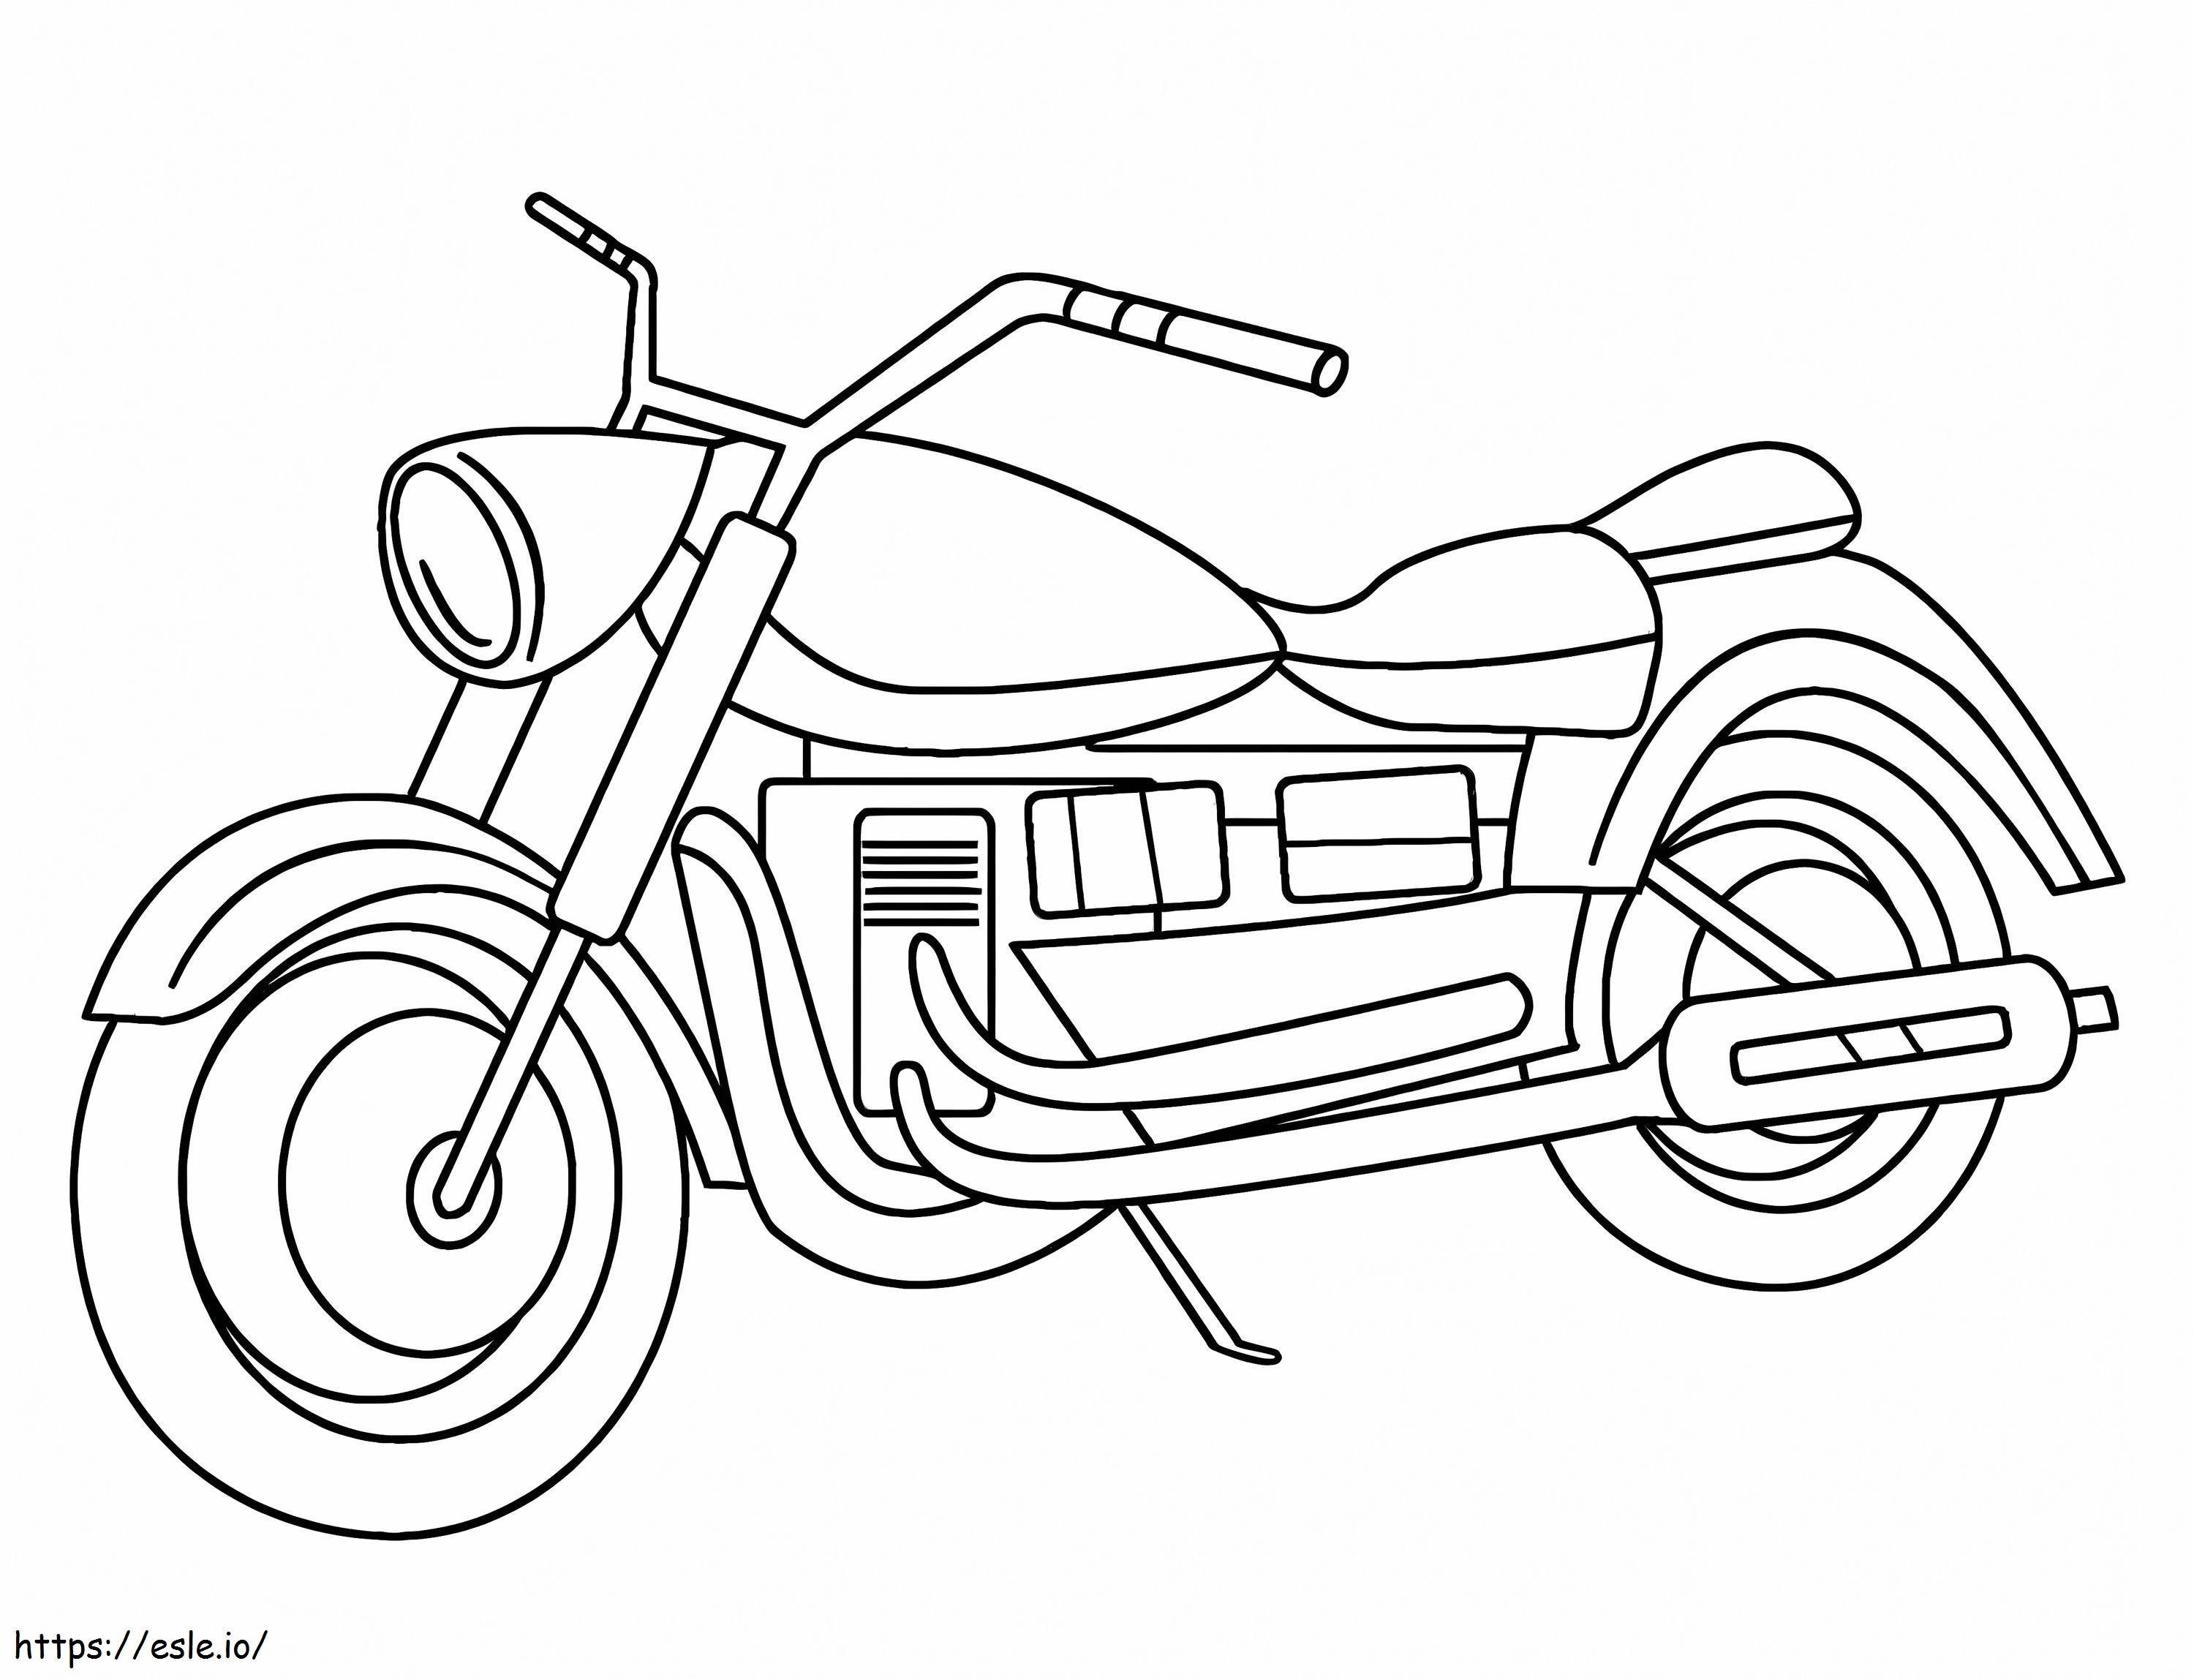 Motorrad 6 ausmalbilder